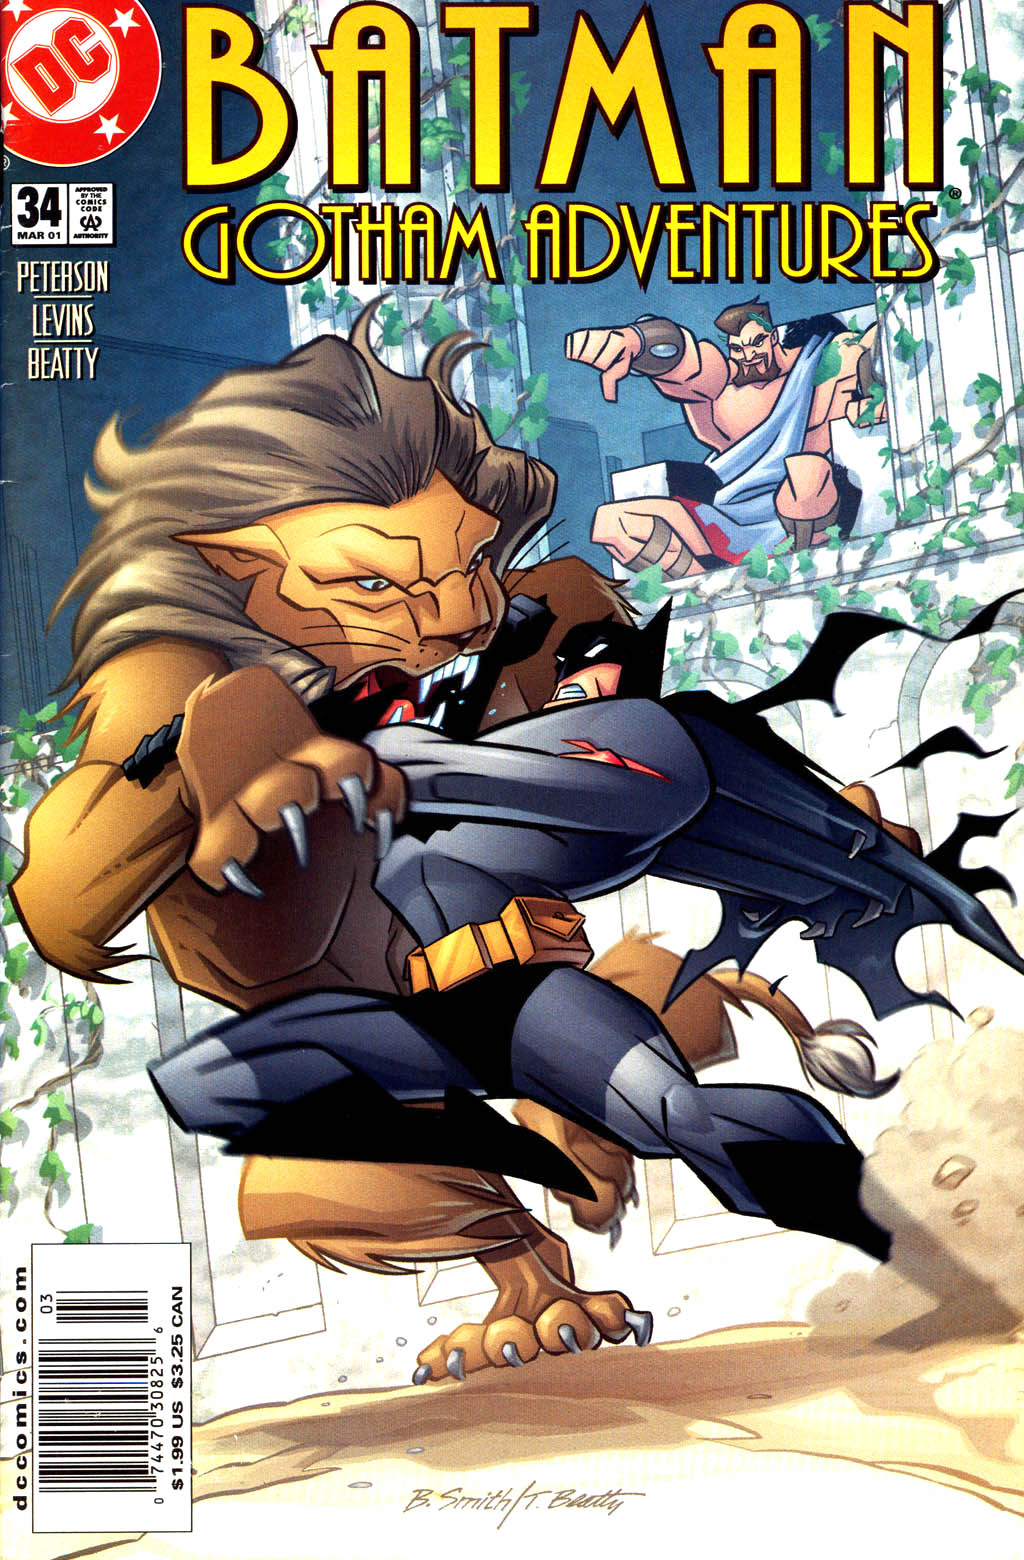 Batman: Gotham Adventures issue 34 - Page 1